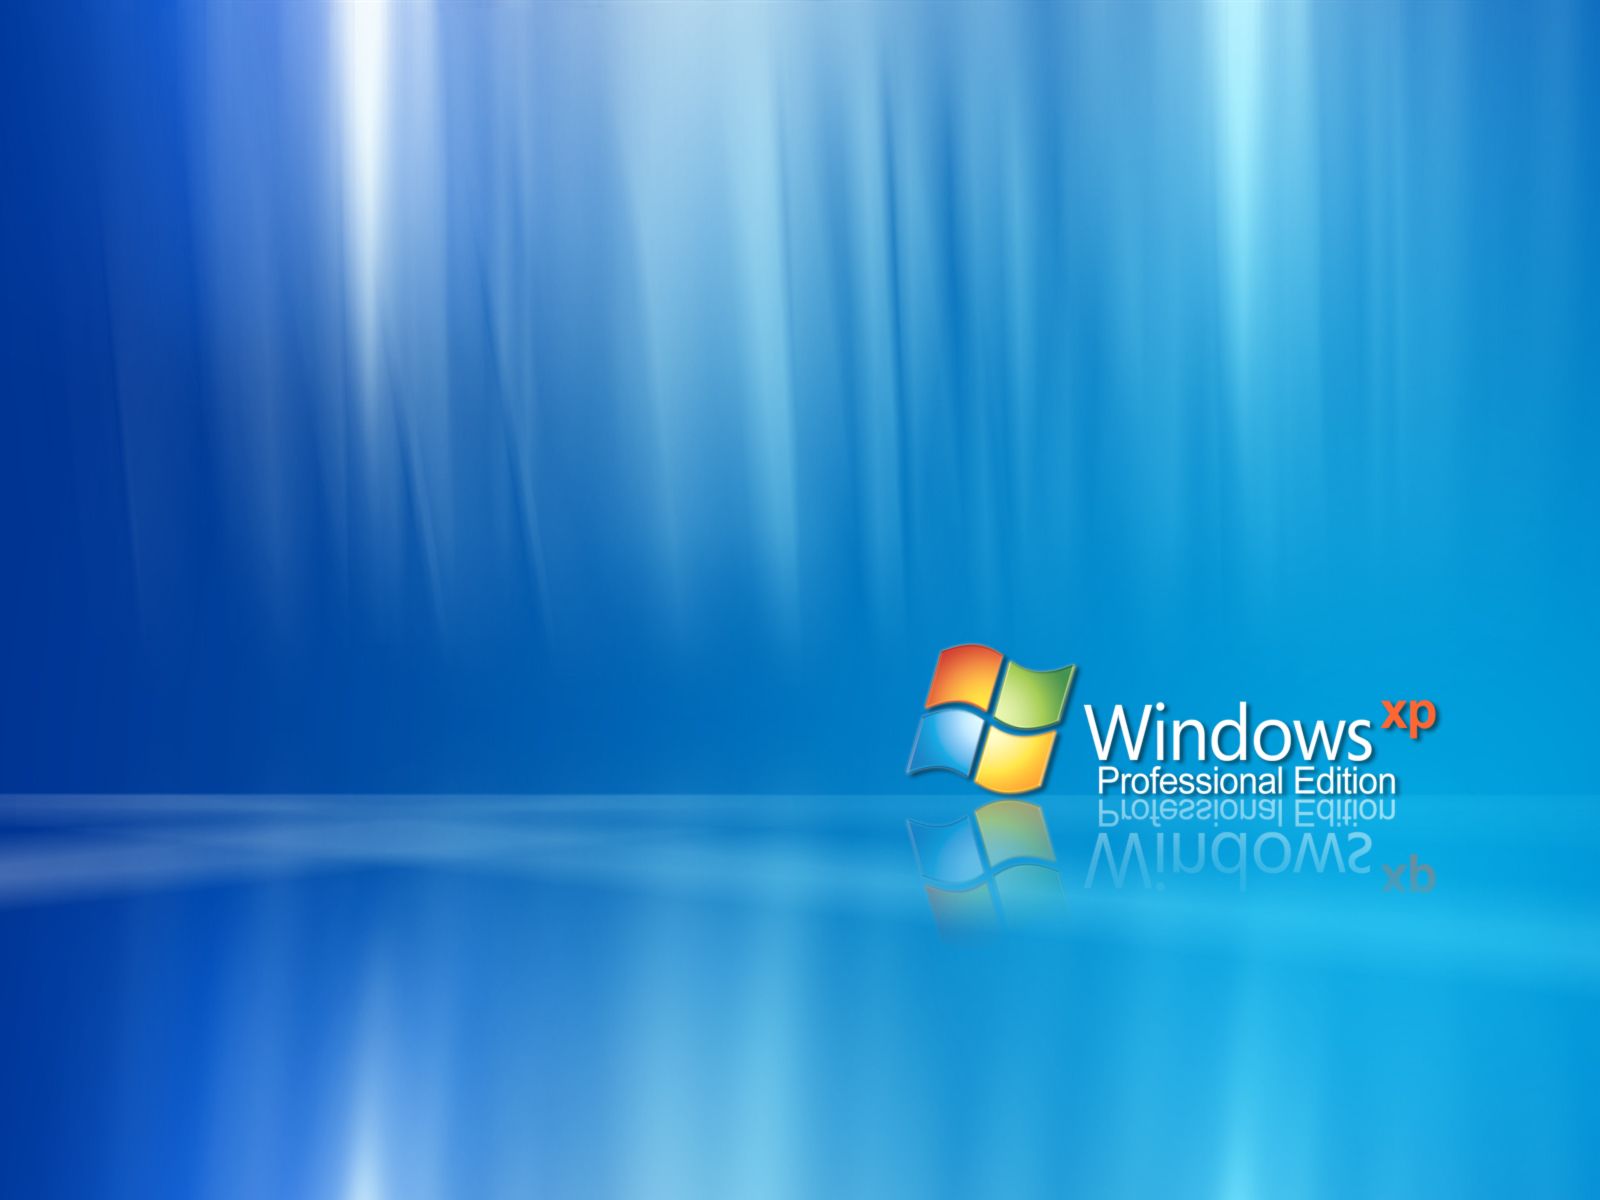 Download_Desktop_Background_For_Windows_Xp-6.jpg